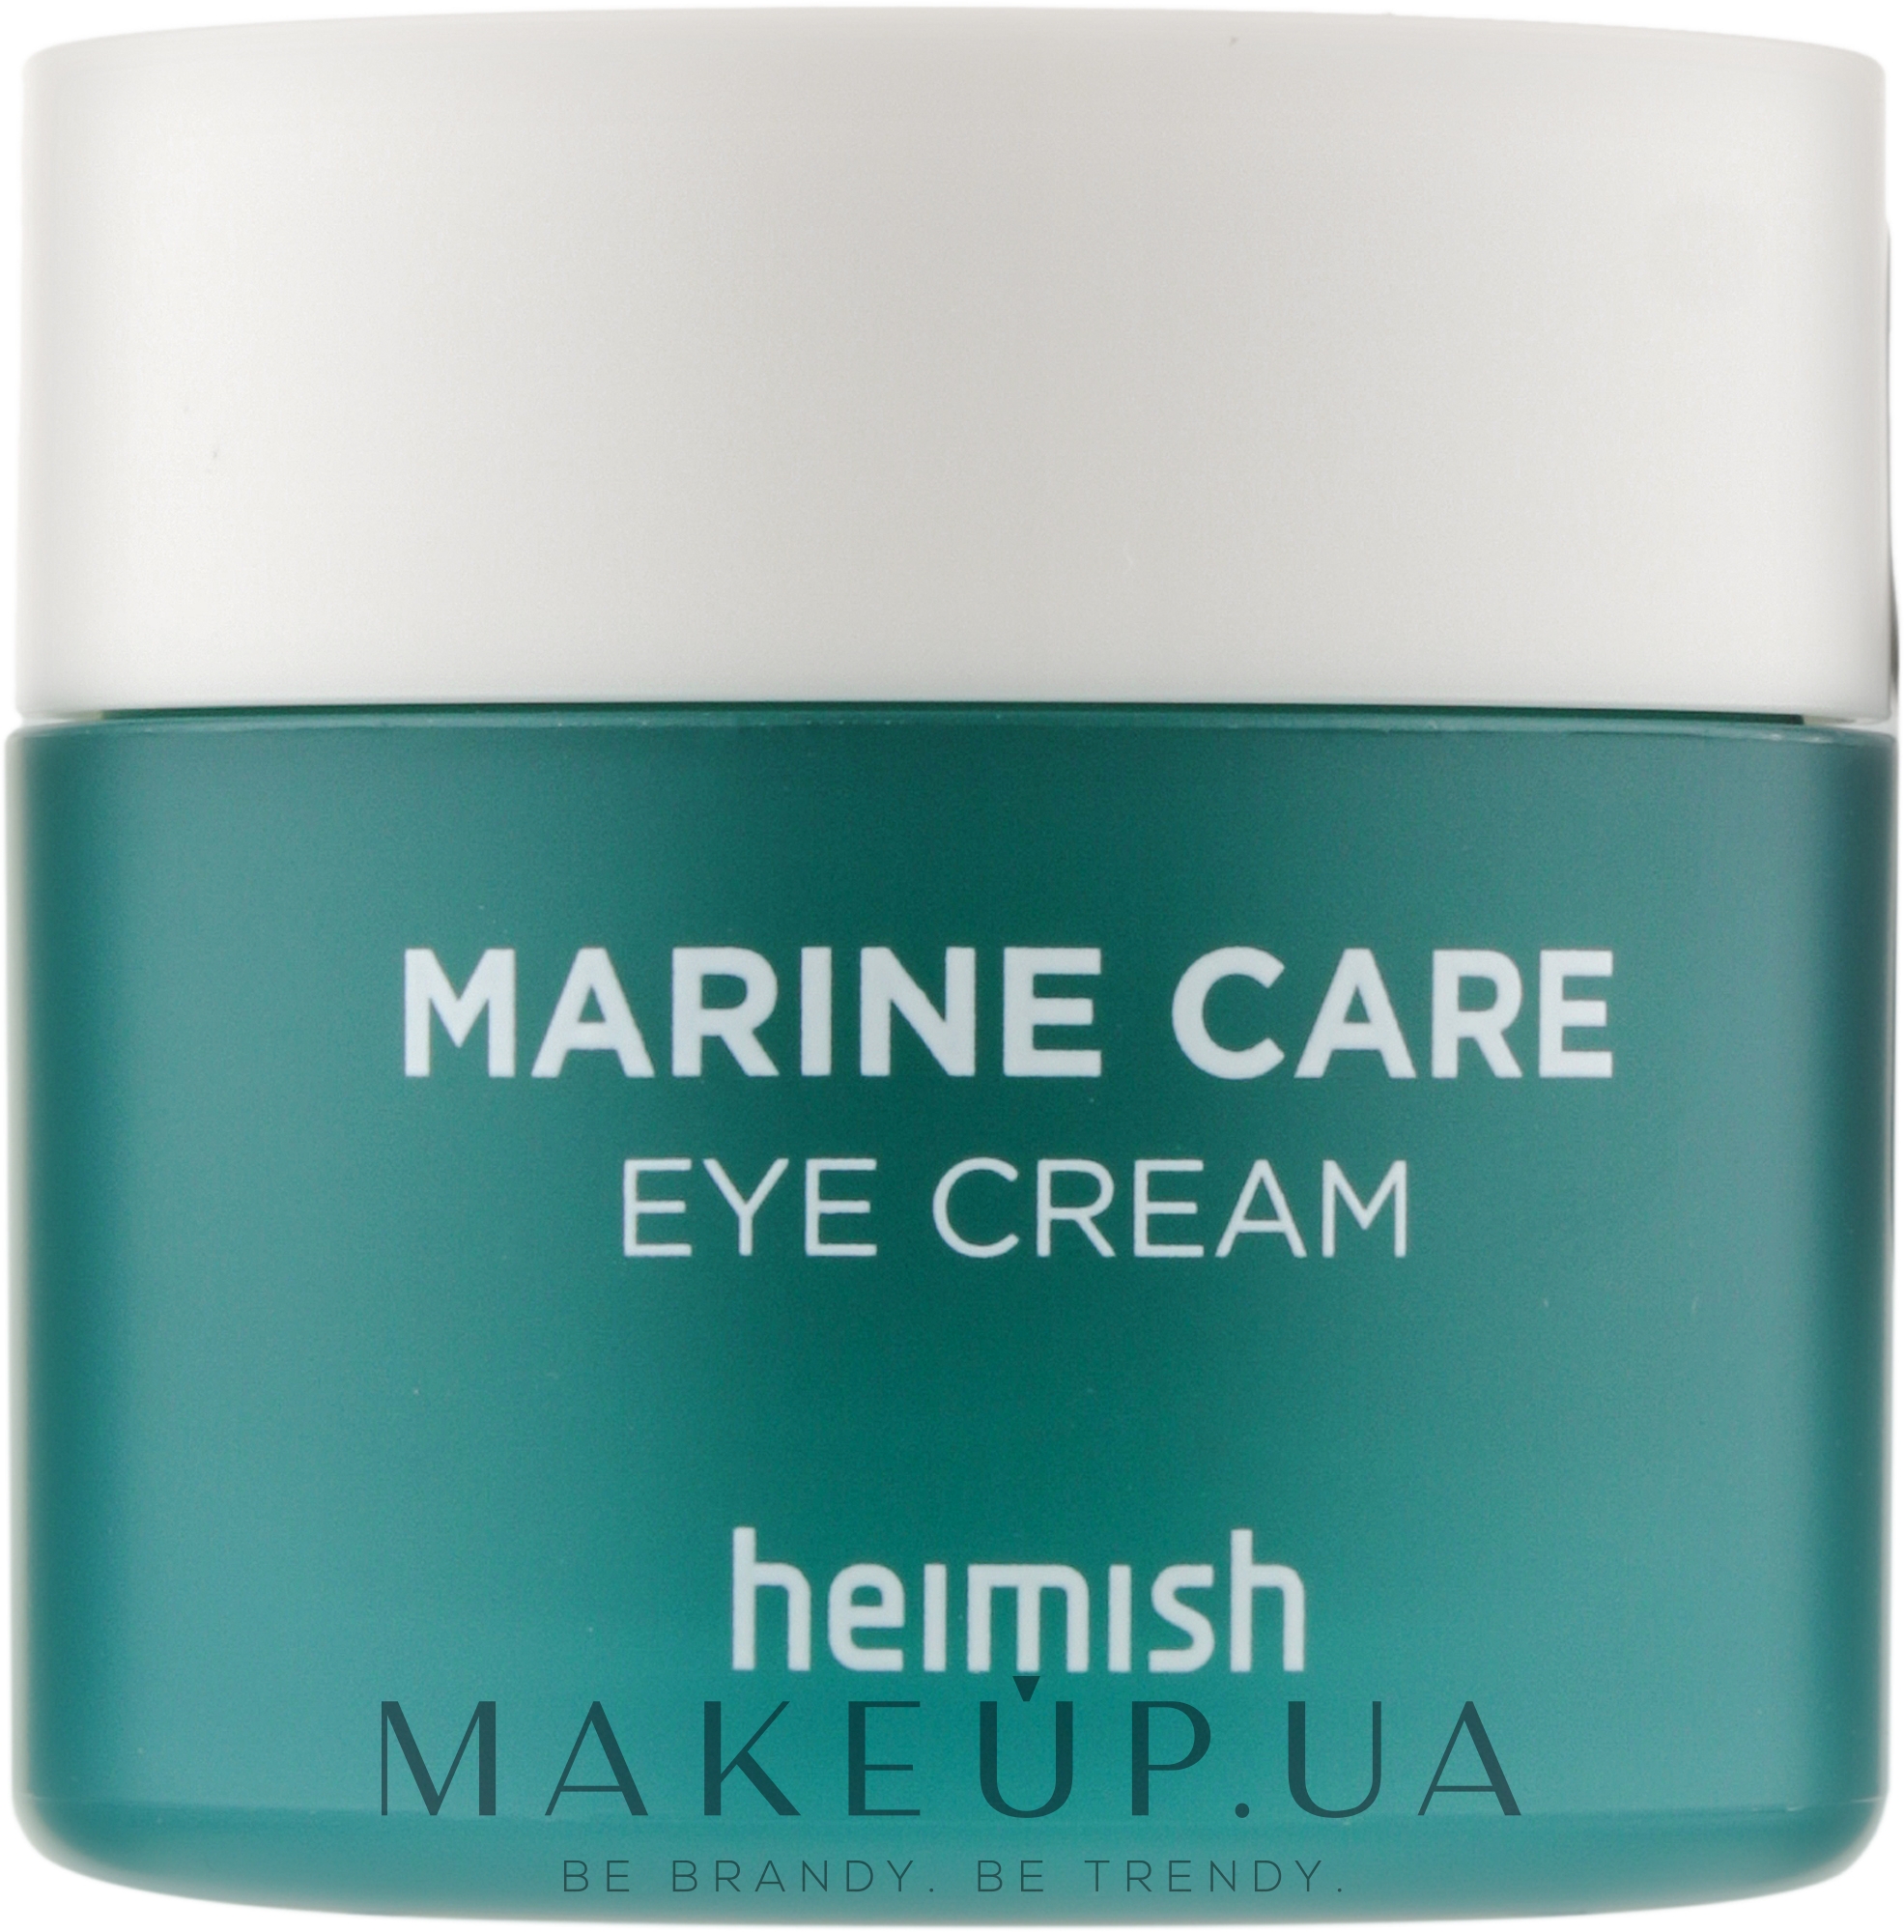 Увлажняющий крем для кожи вокруг глаз, с морскими экстрактами - Heimish Marine Care Eye Cream — фото 30ml